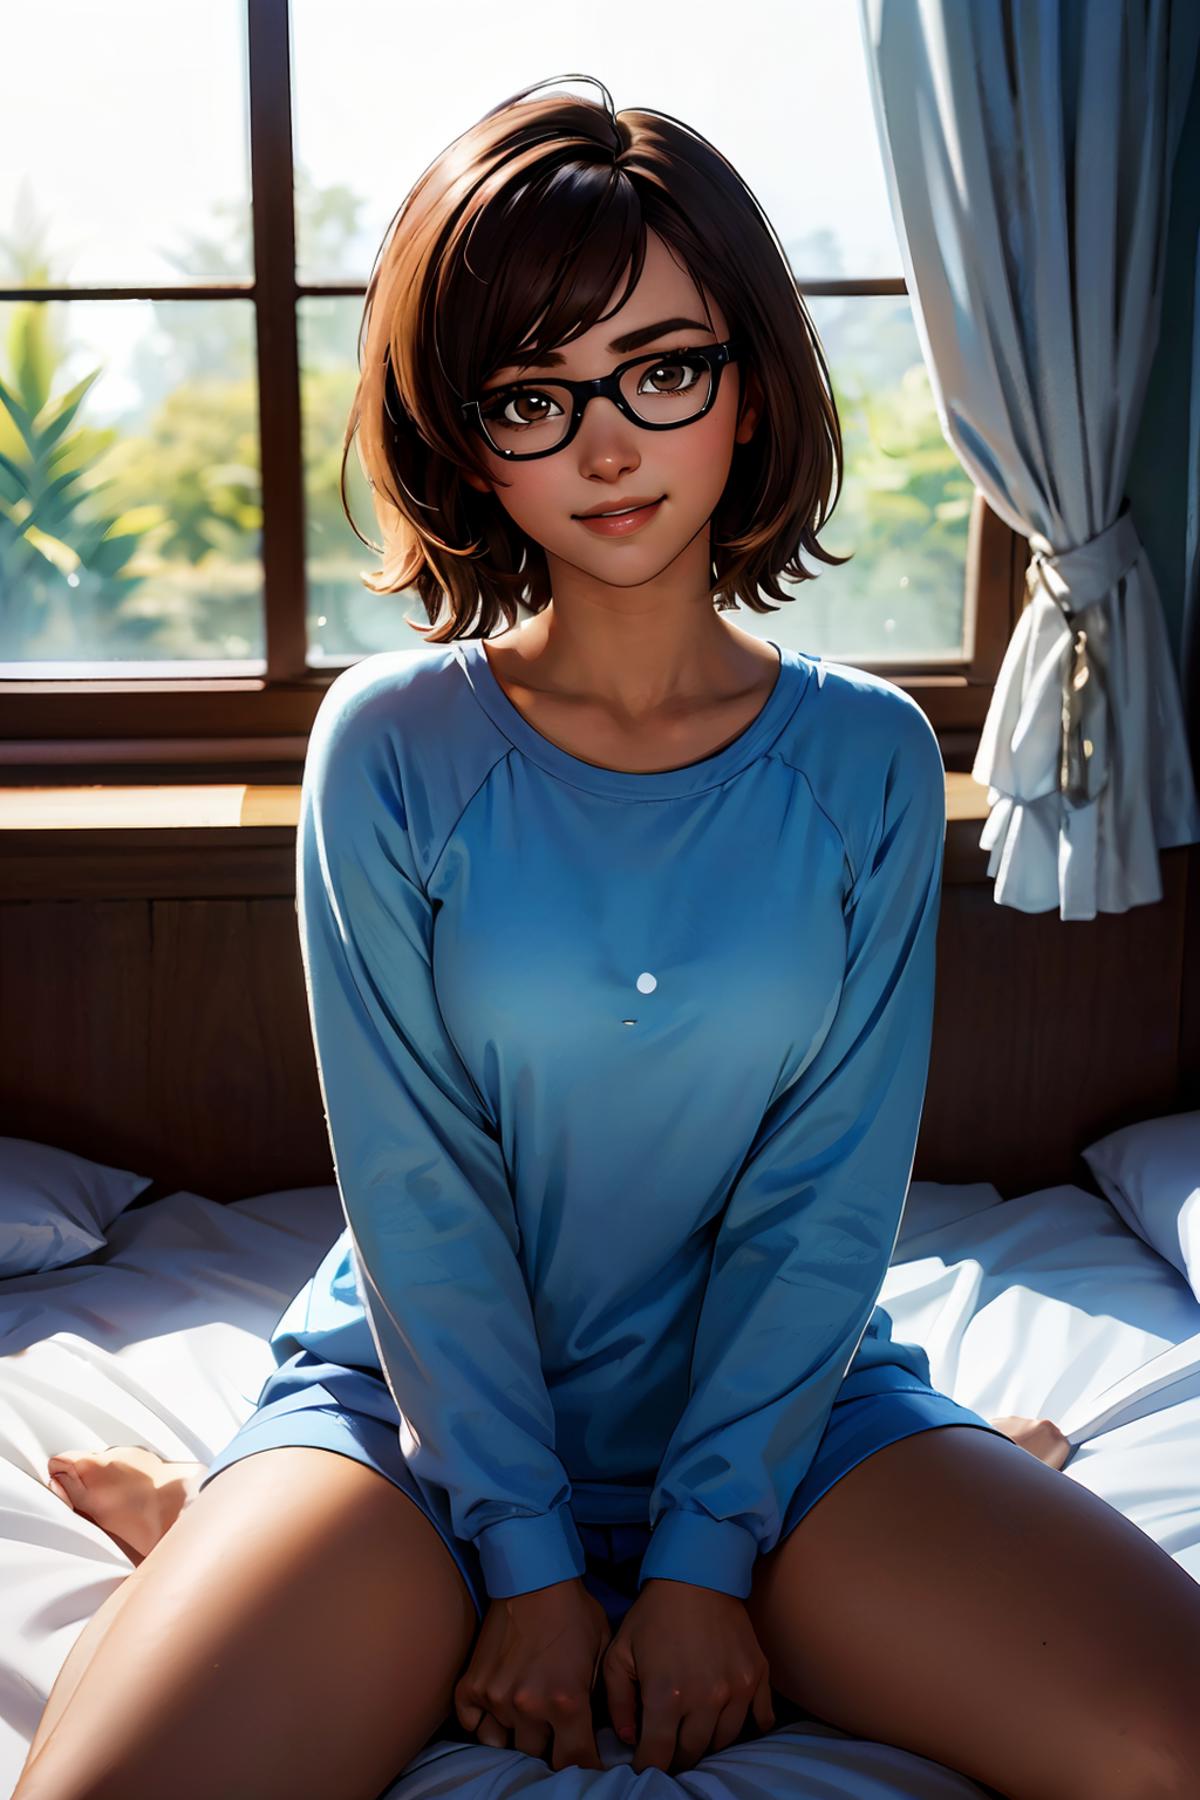 Mei - Overwatch (Pajamas) image by wikkitikki